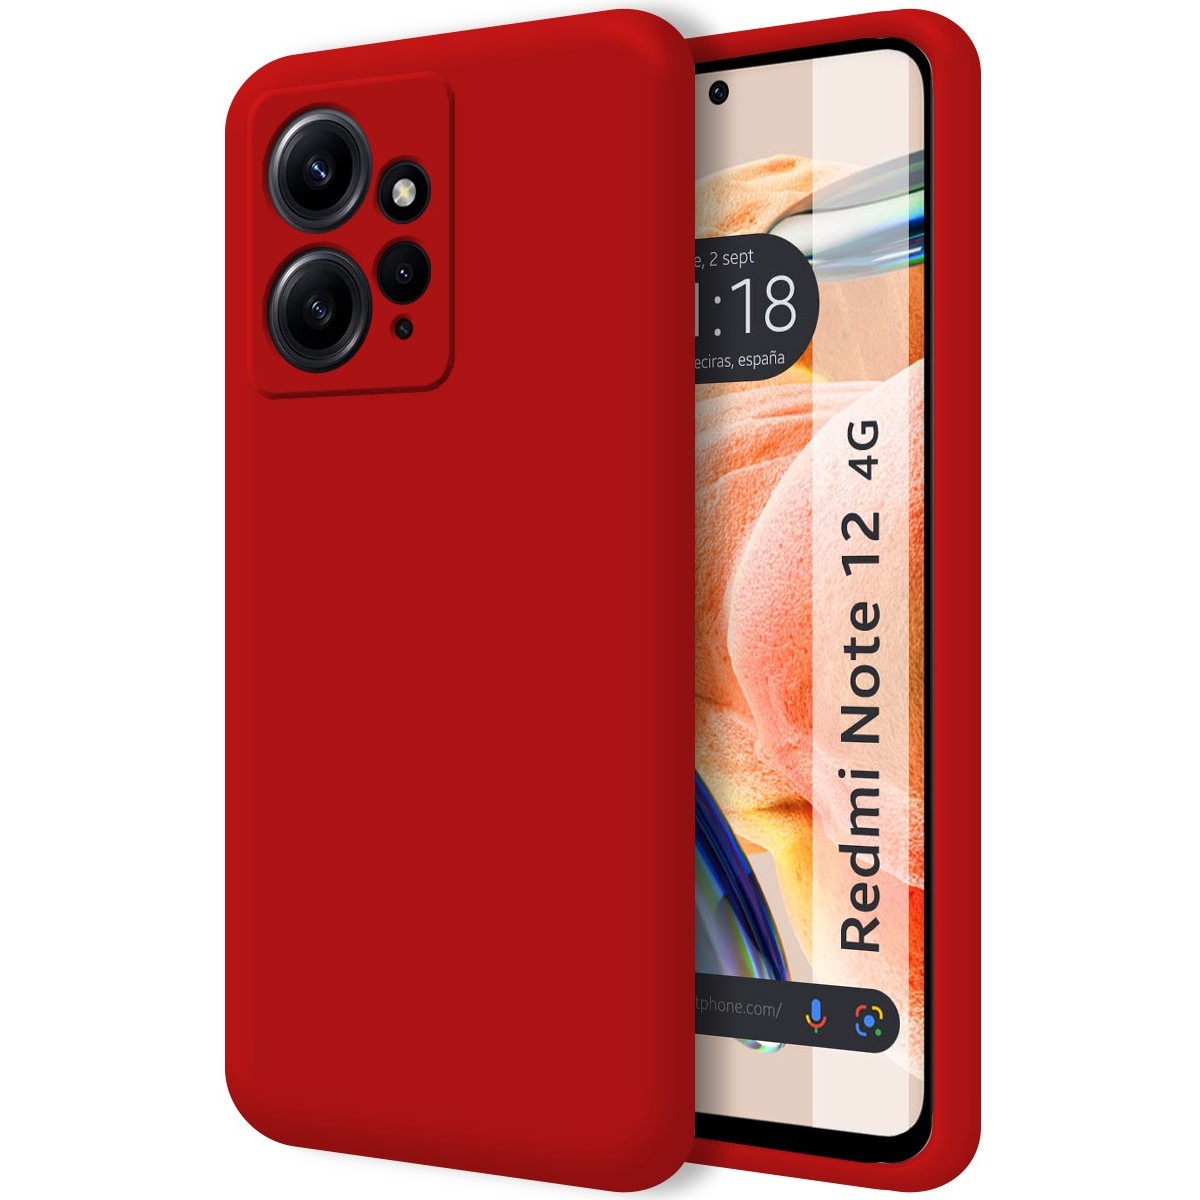 Funda 360 Xiaomi Redmi Note 7 Roja y Negra